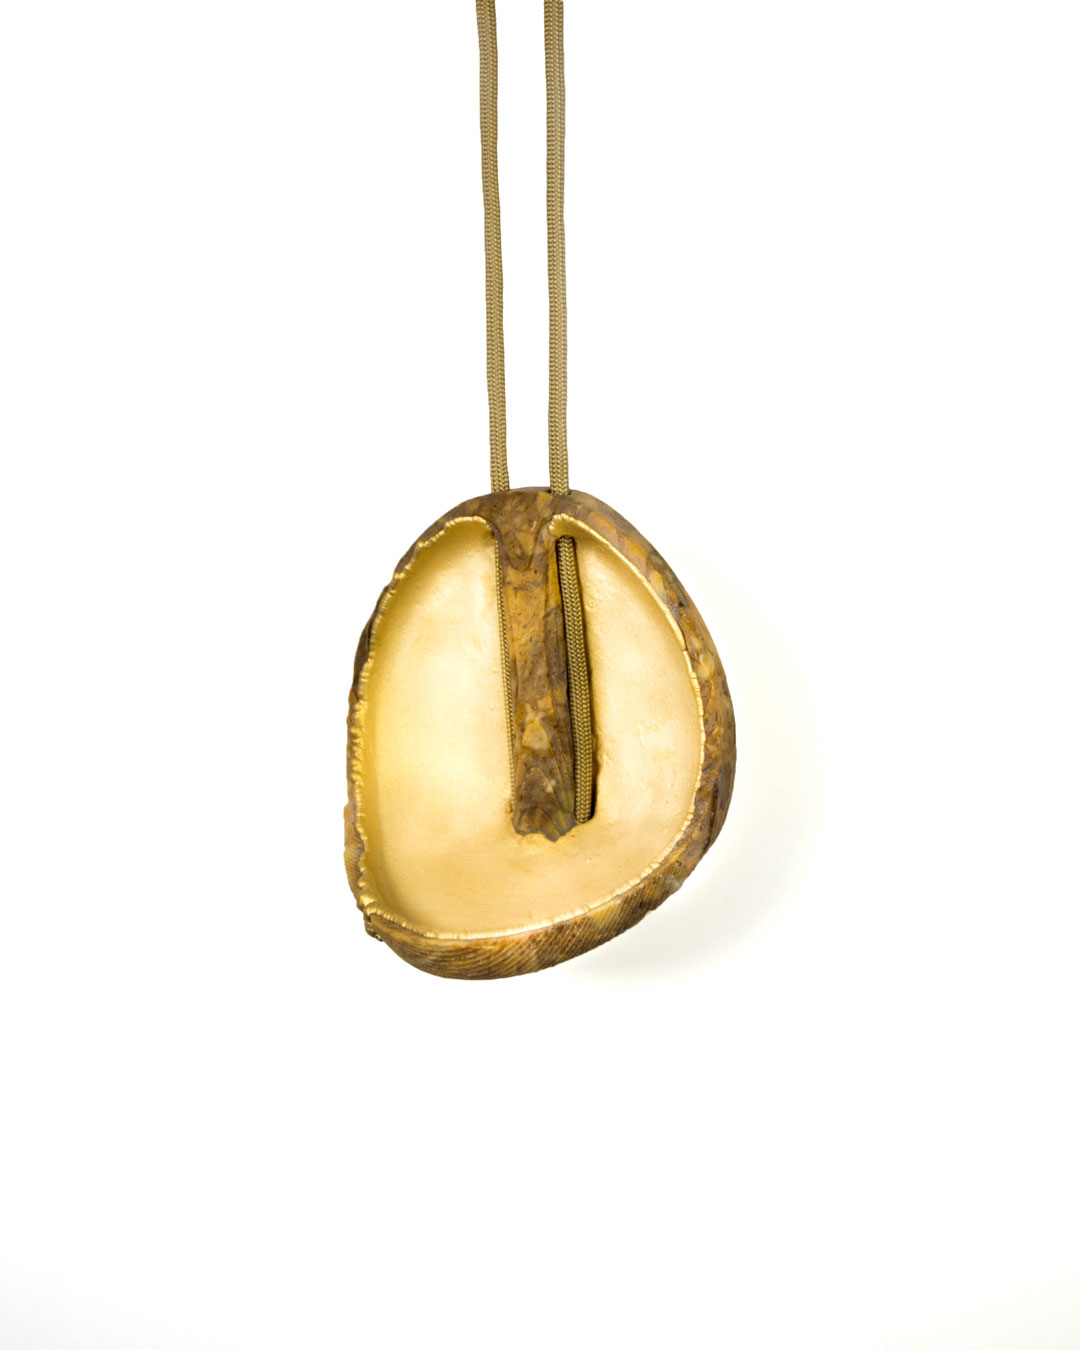 Edu Tarín, untitled, 2016, pendant; yellow jasper, copper, gold, 100 x 95 x 65 mm, €5450